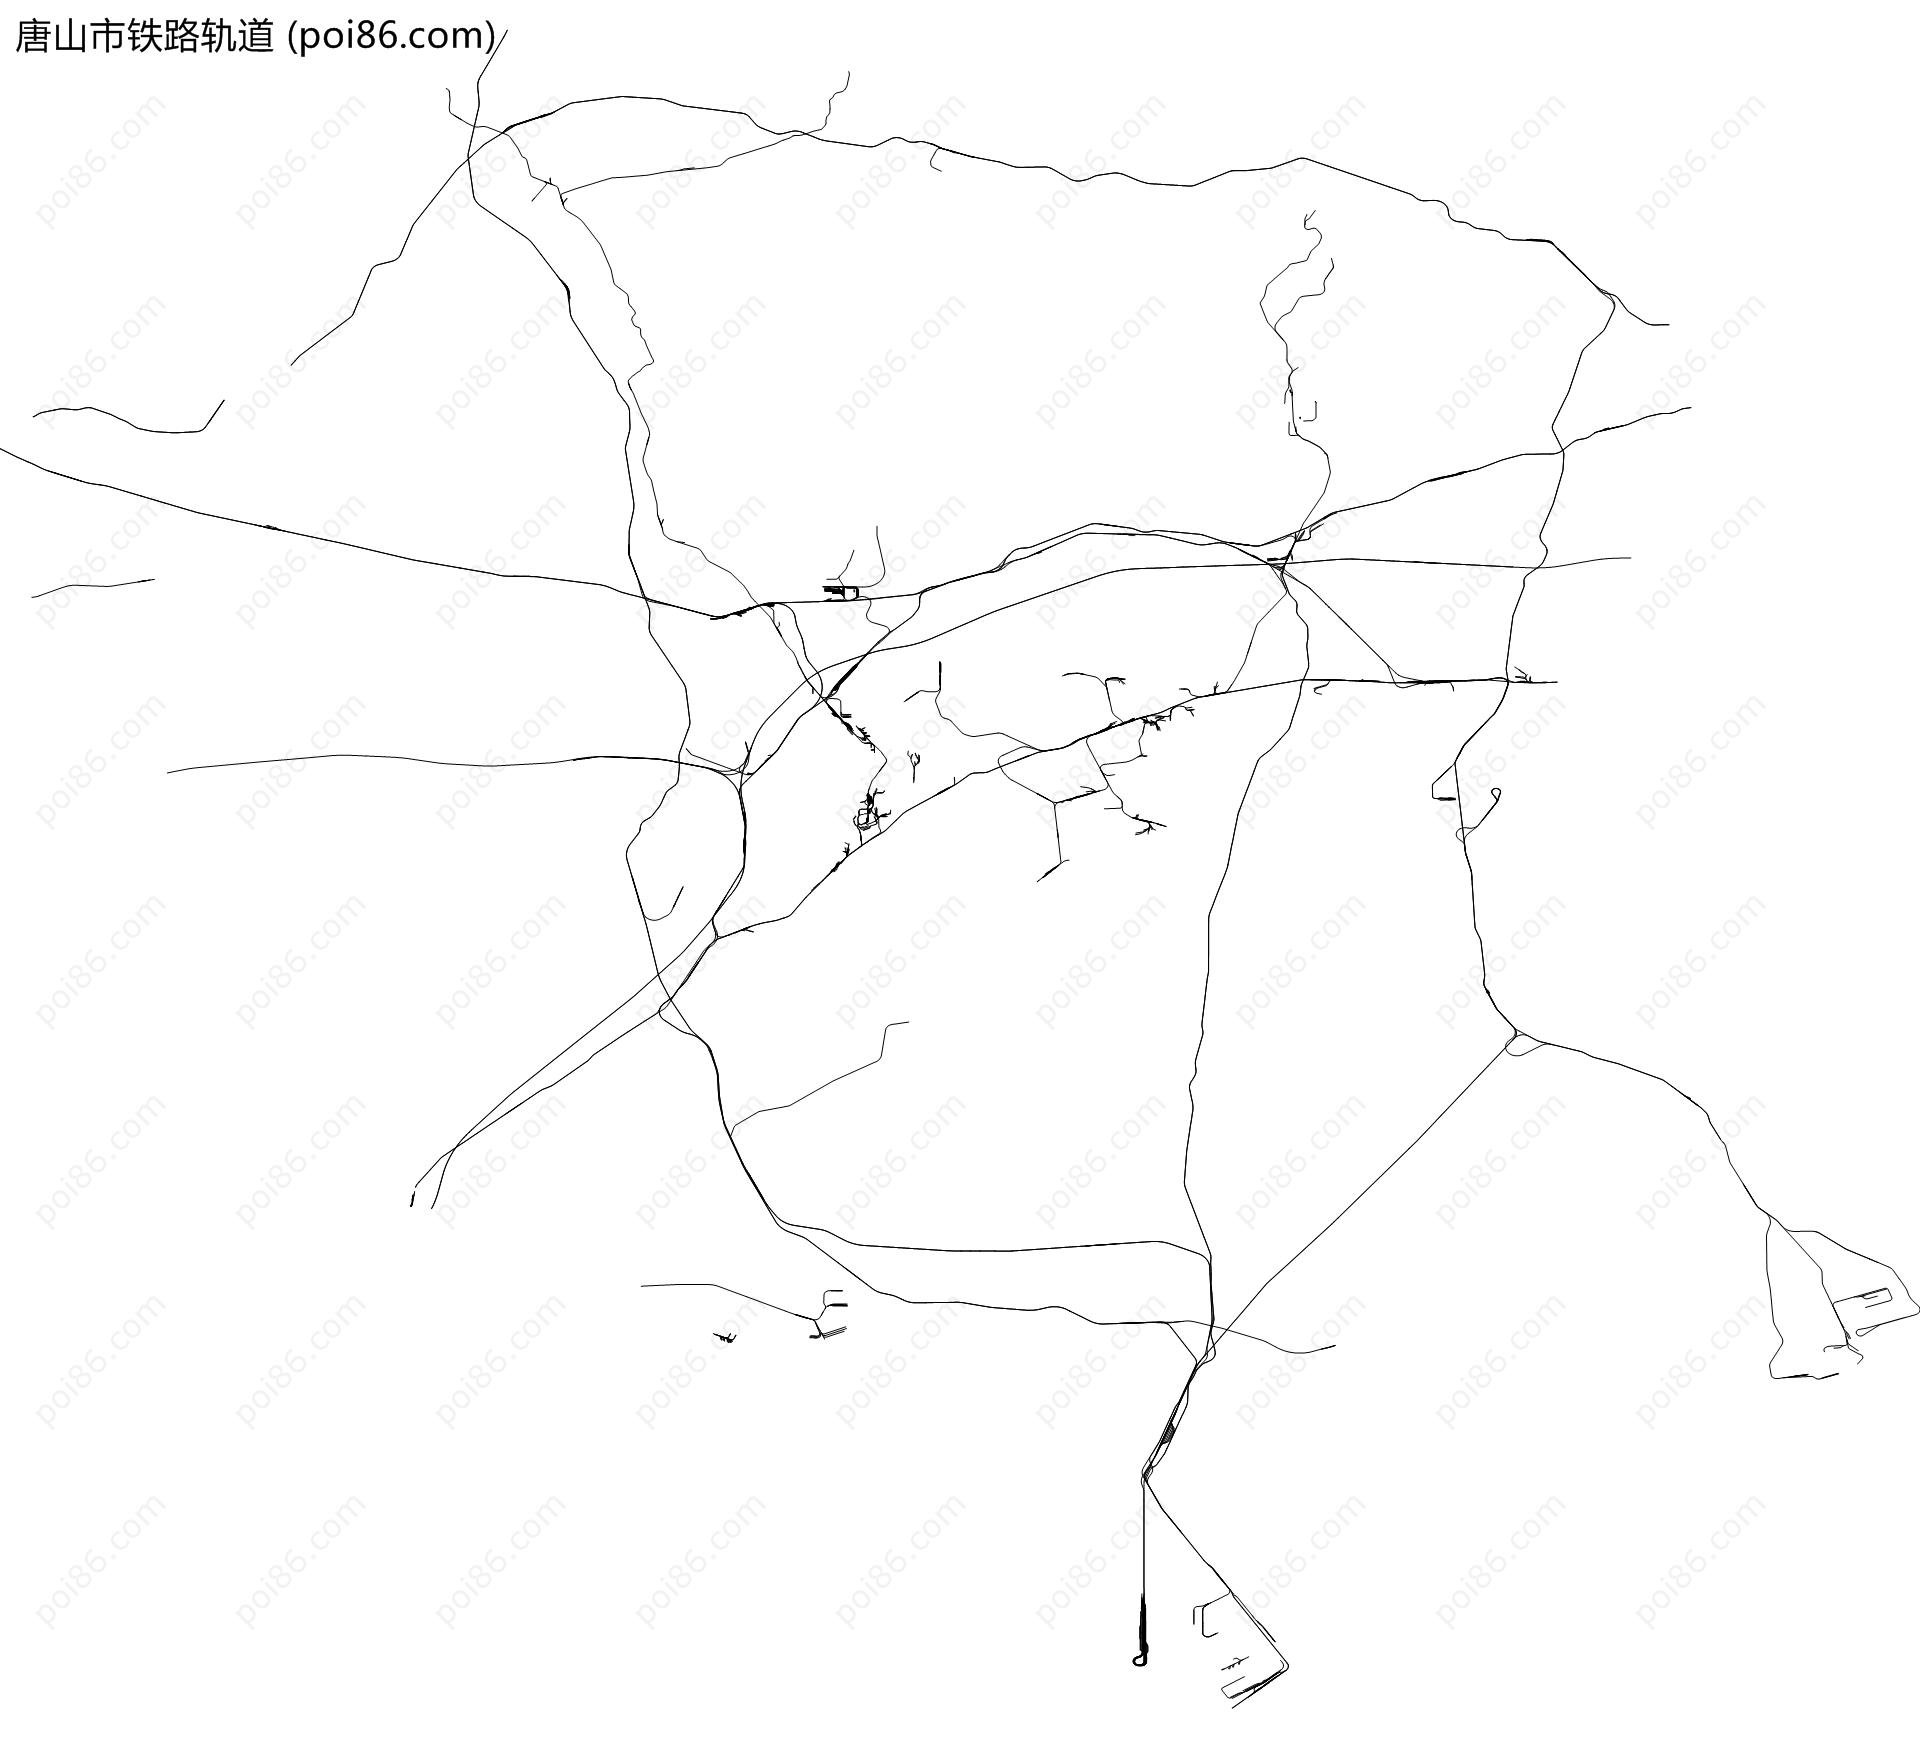 唐山市铁路轨道地图